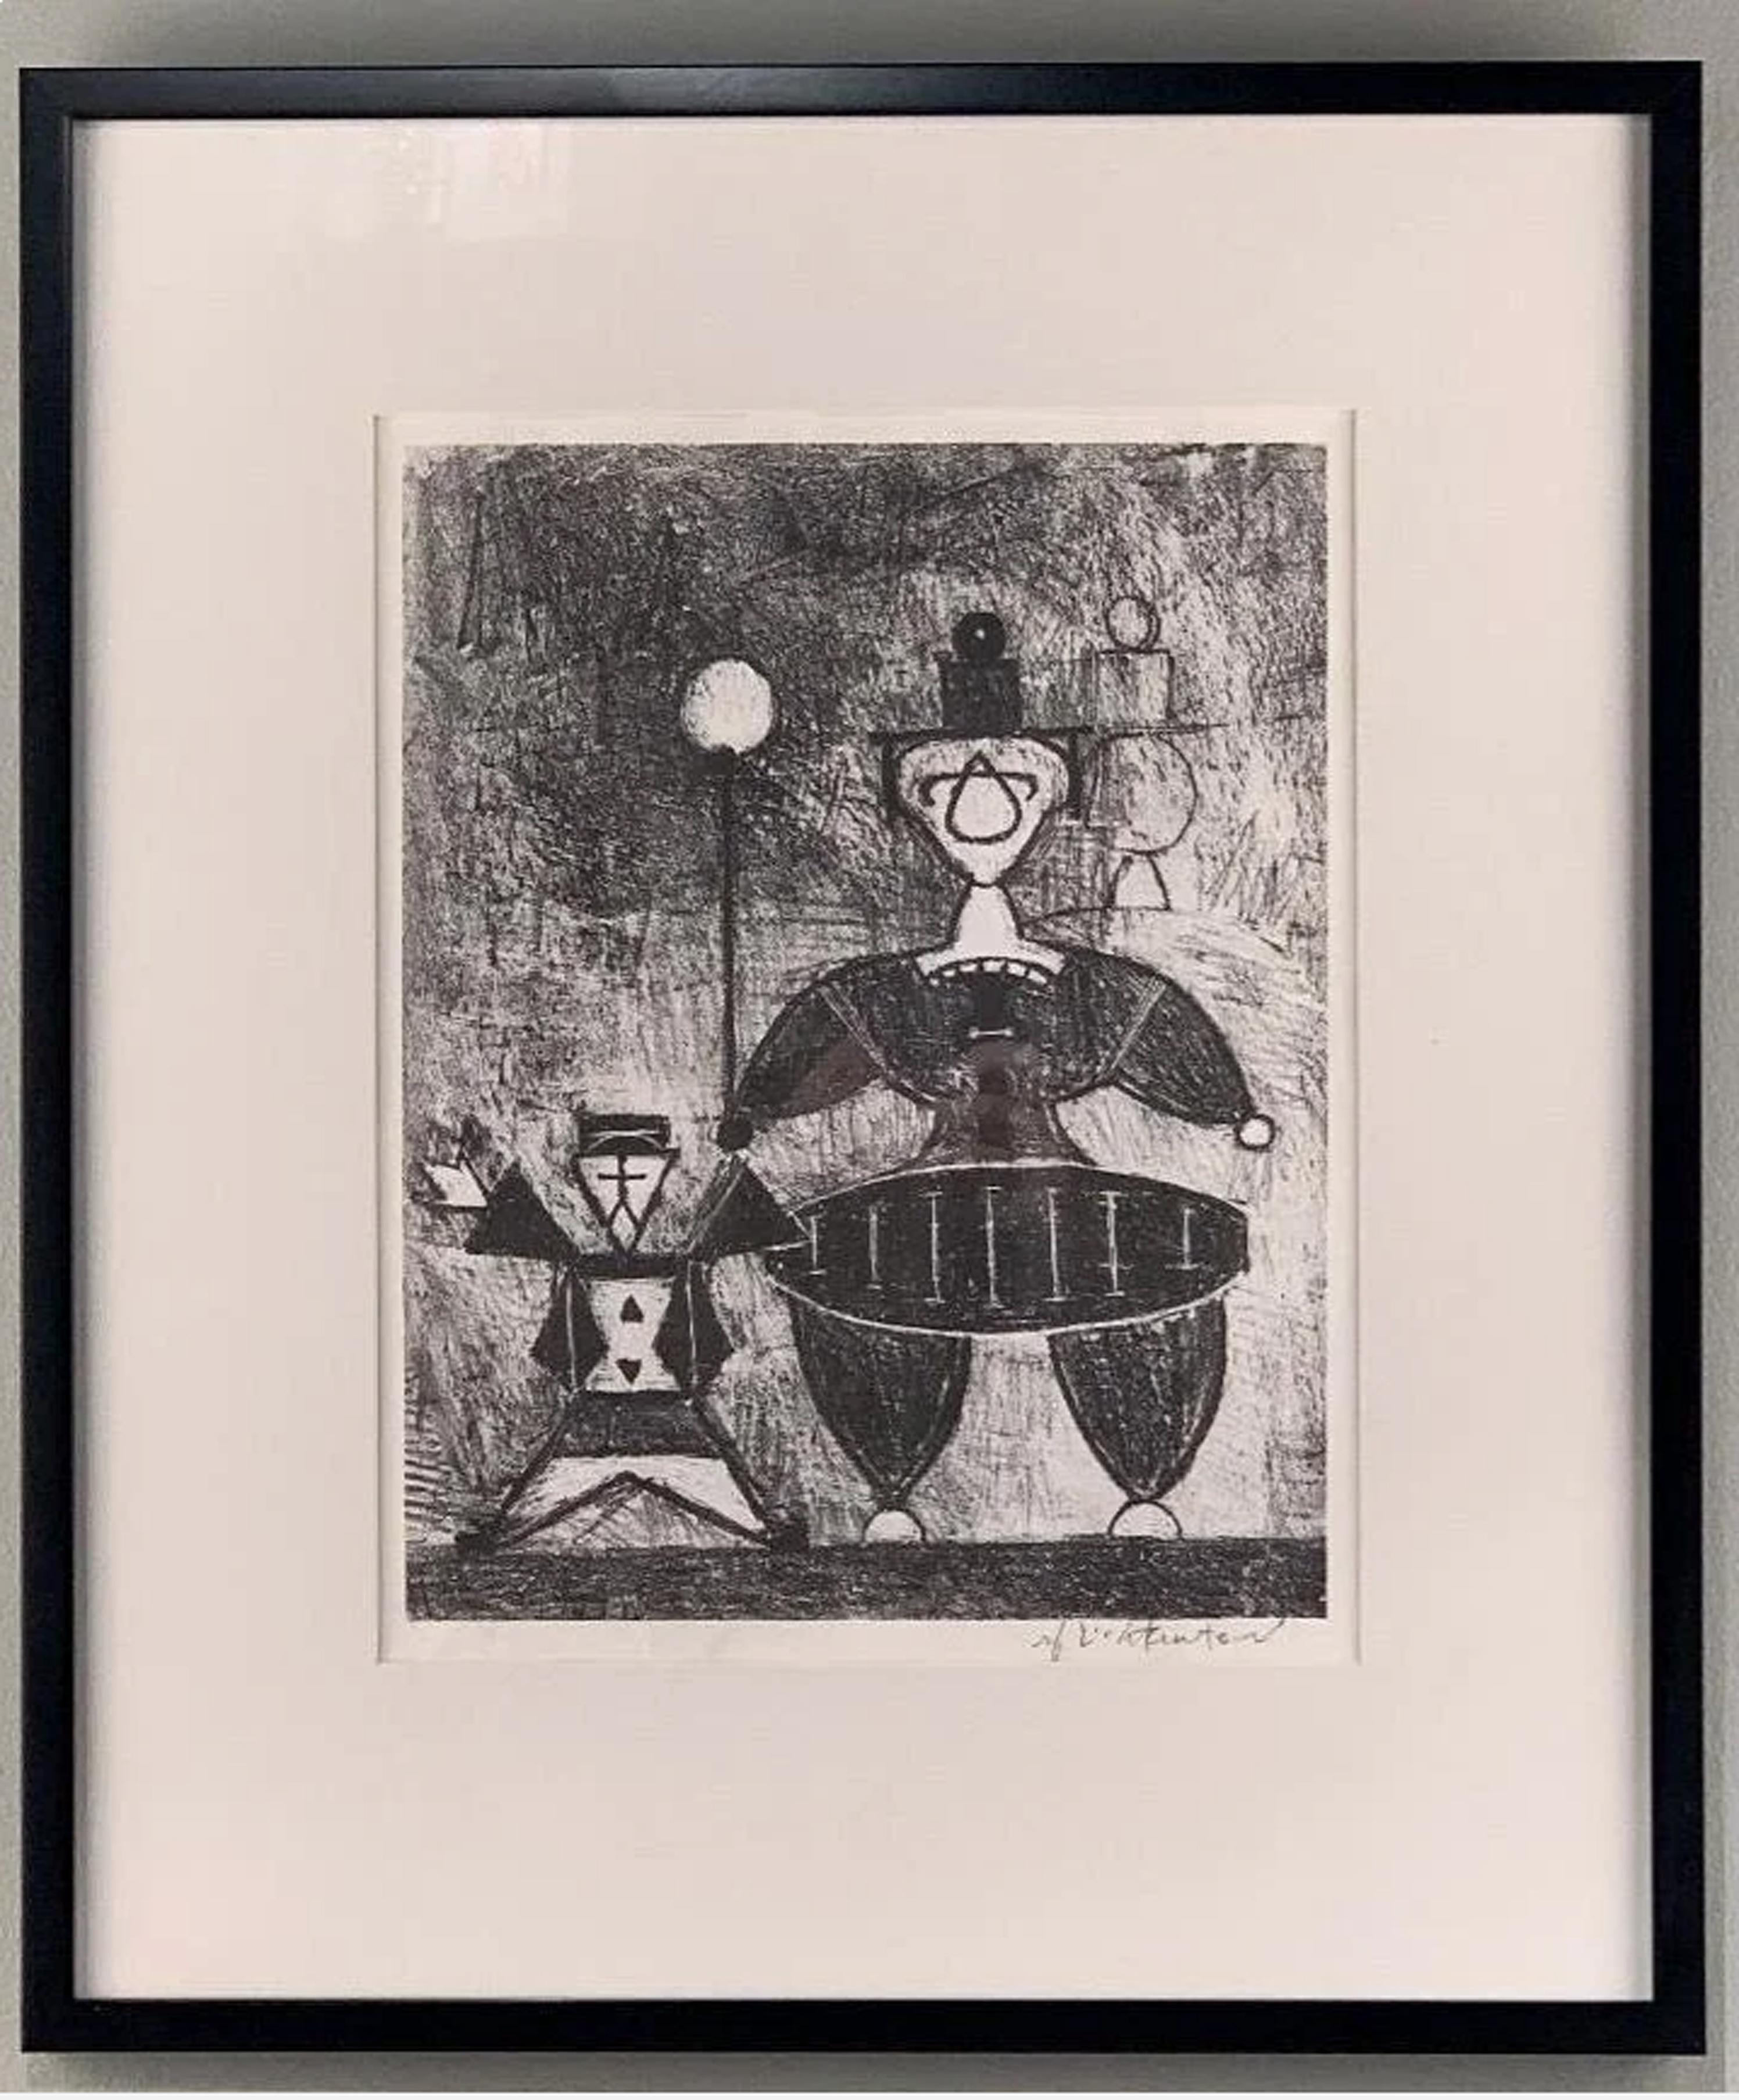  Mother and Child - Print by Roy Lichtenstein